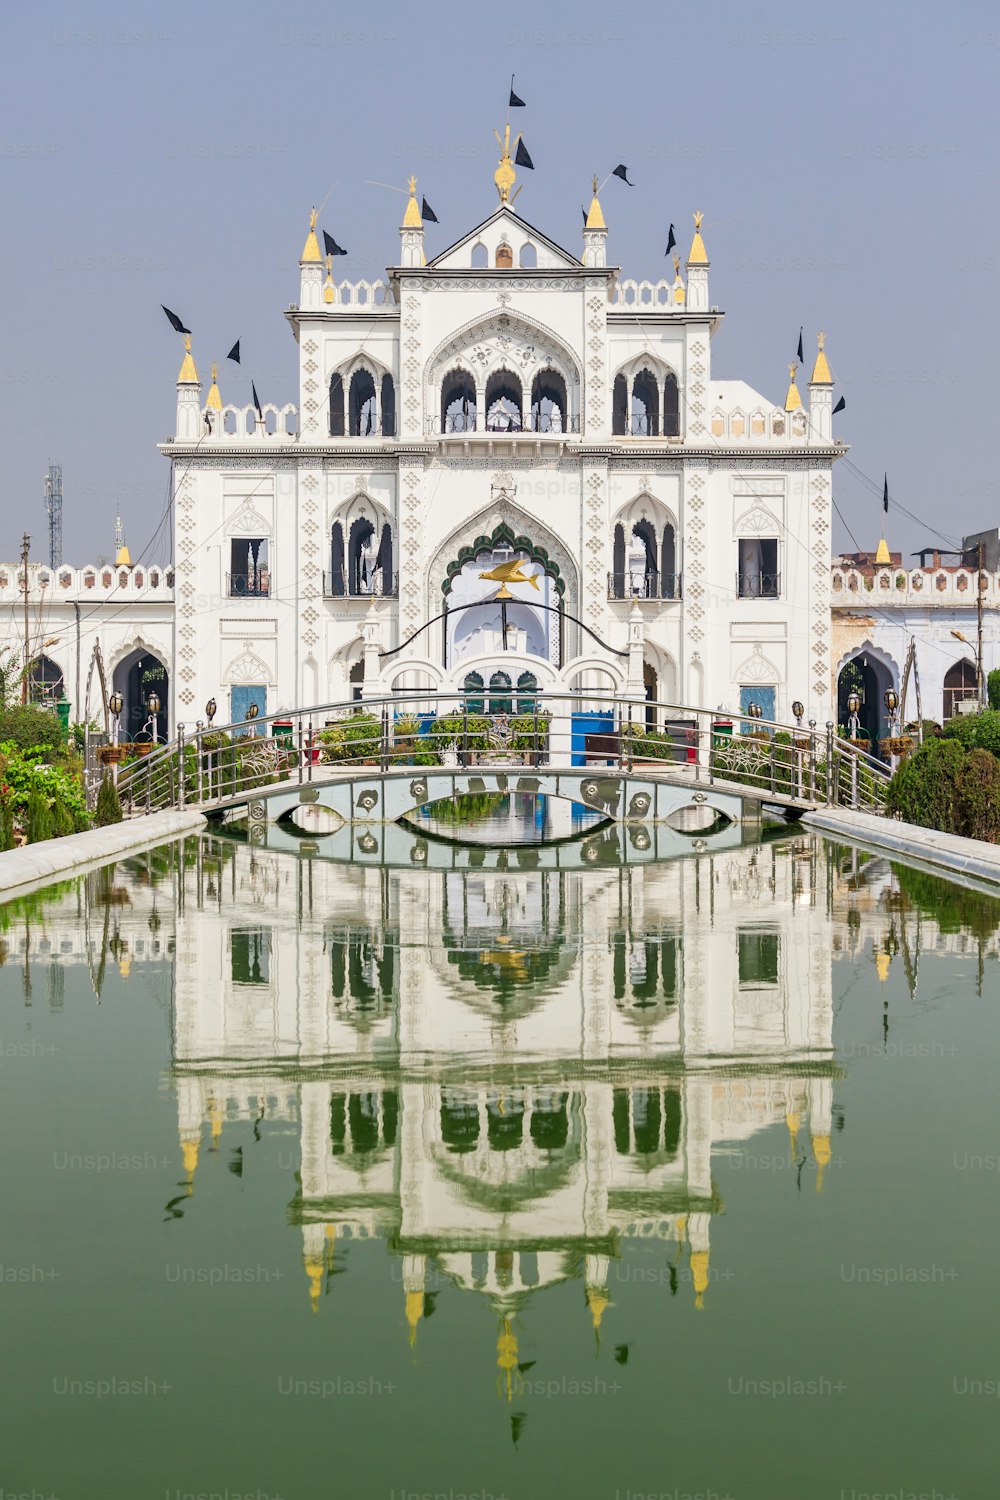 Chota Imambara, également connu sous le nom de Hussainabad Imambara est un monument imposant situé dans la ville de Lucknow dans l’Uttar Pradesh, en Inde